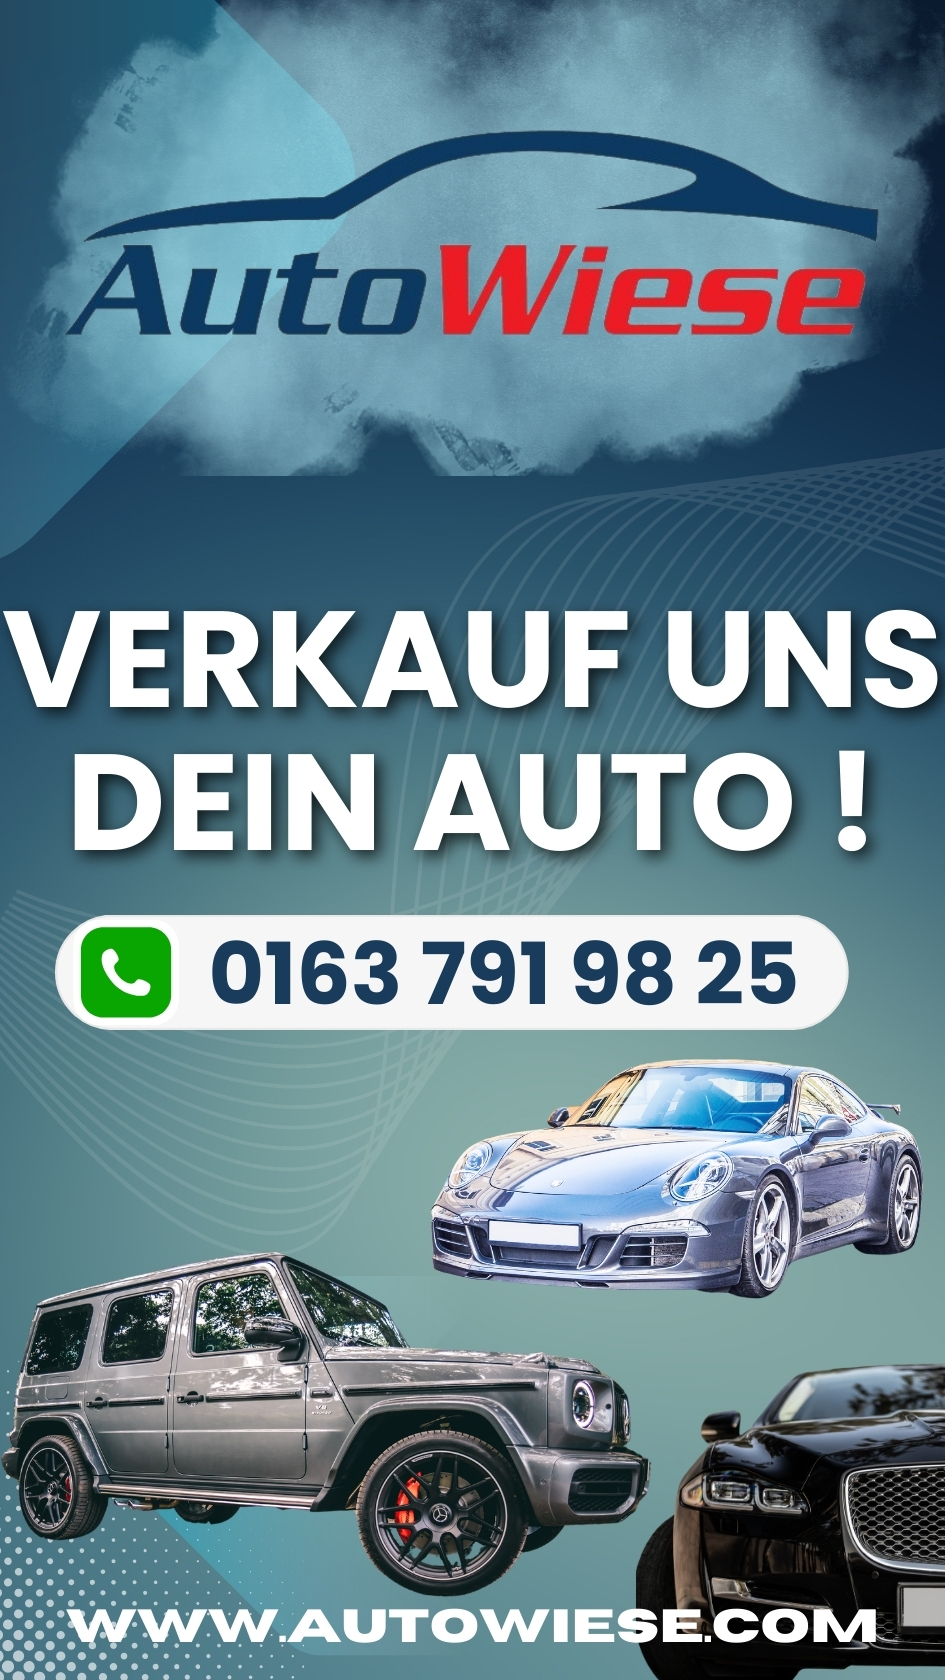 Verkauf uns dein Auto ! Autowiese Berlin Berlin 030 40588810